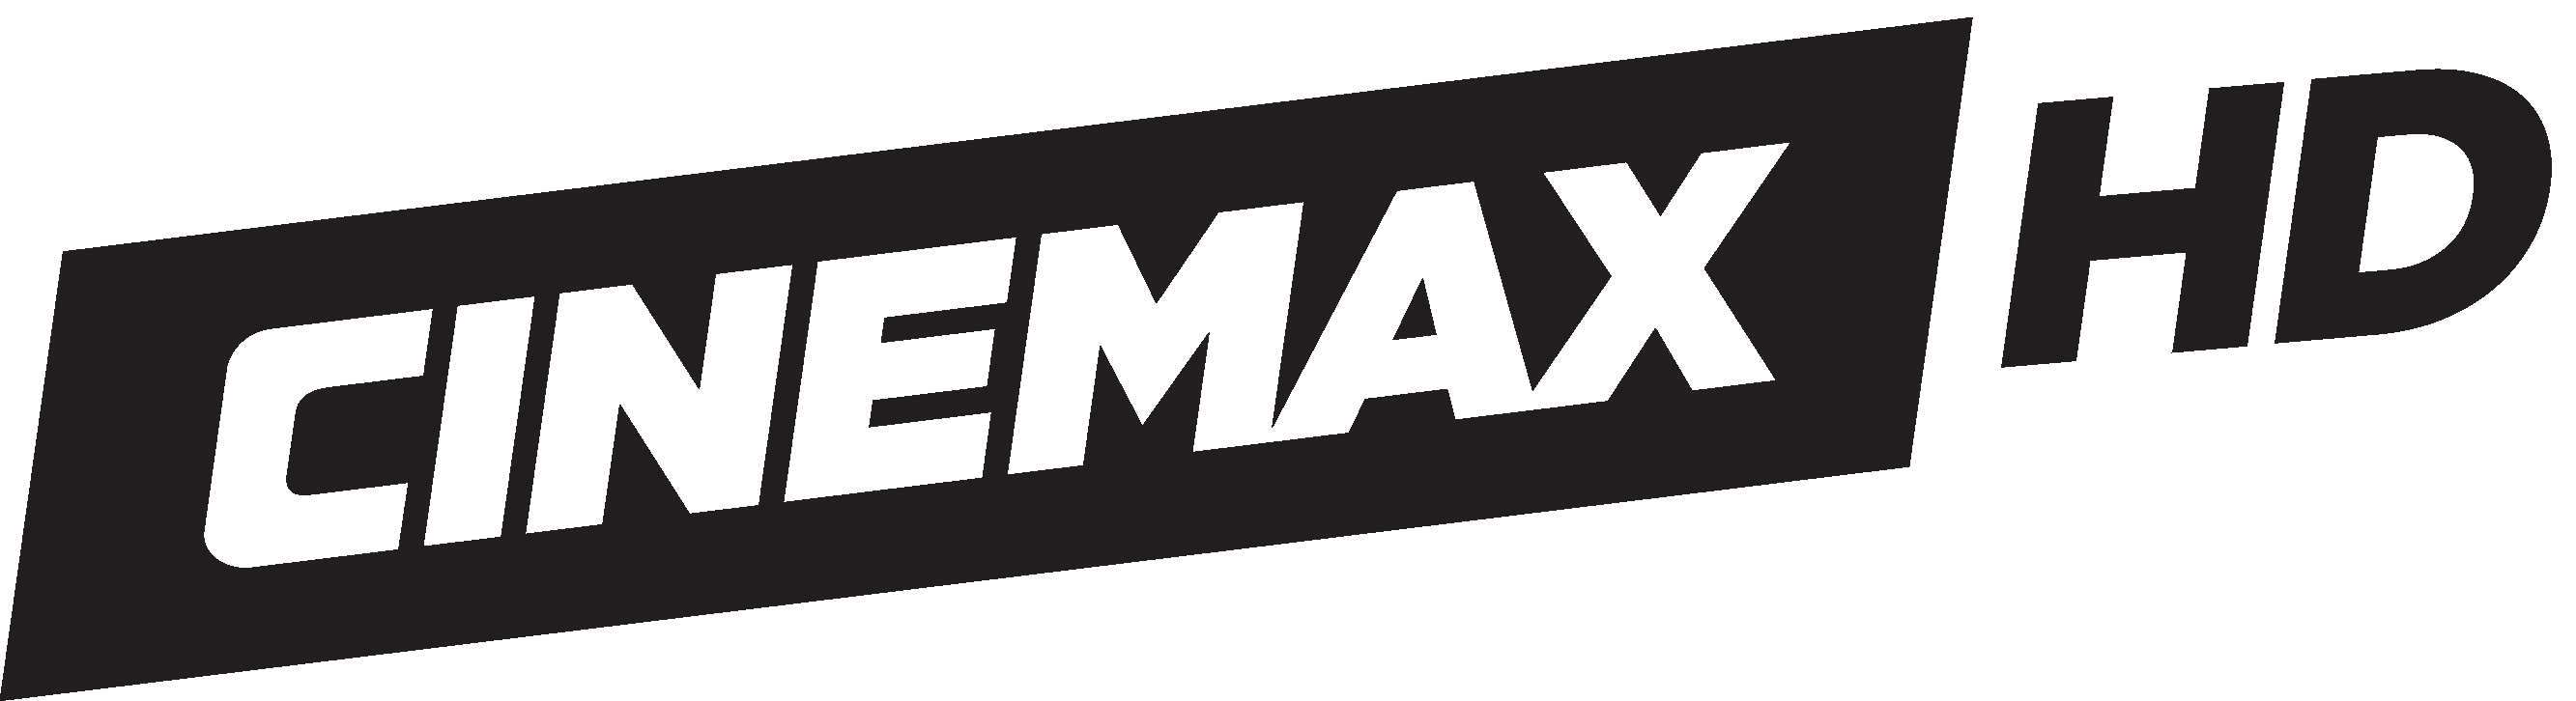 Cinemax HD.png